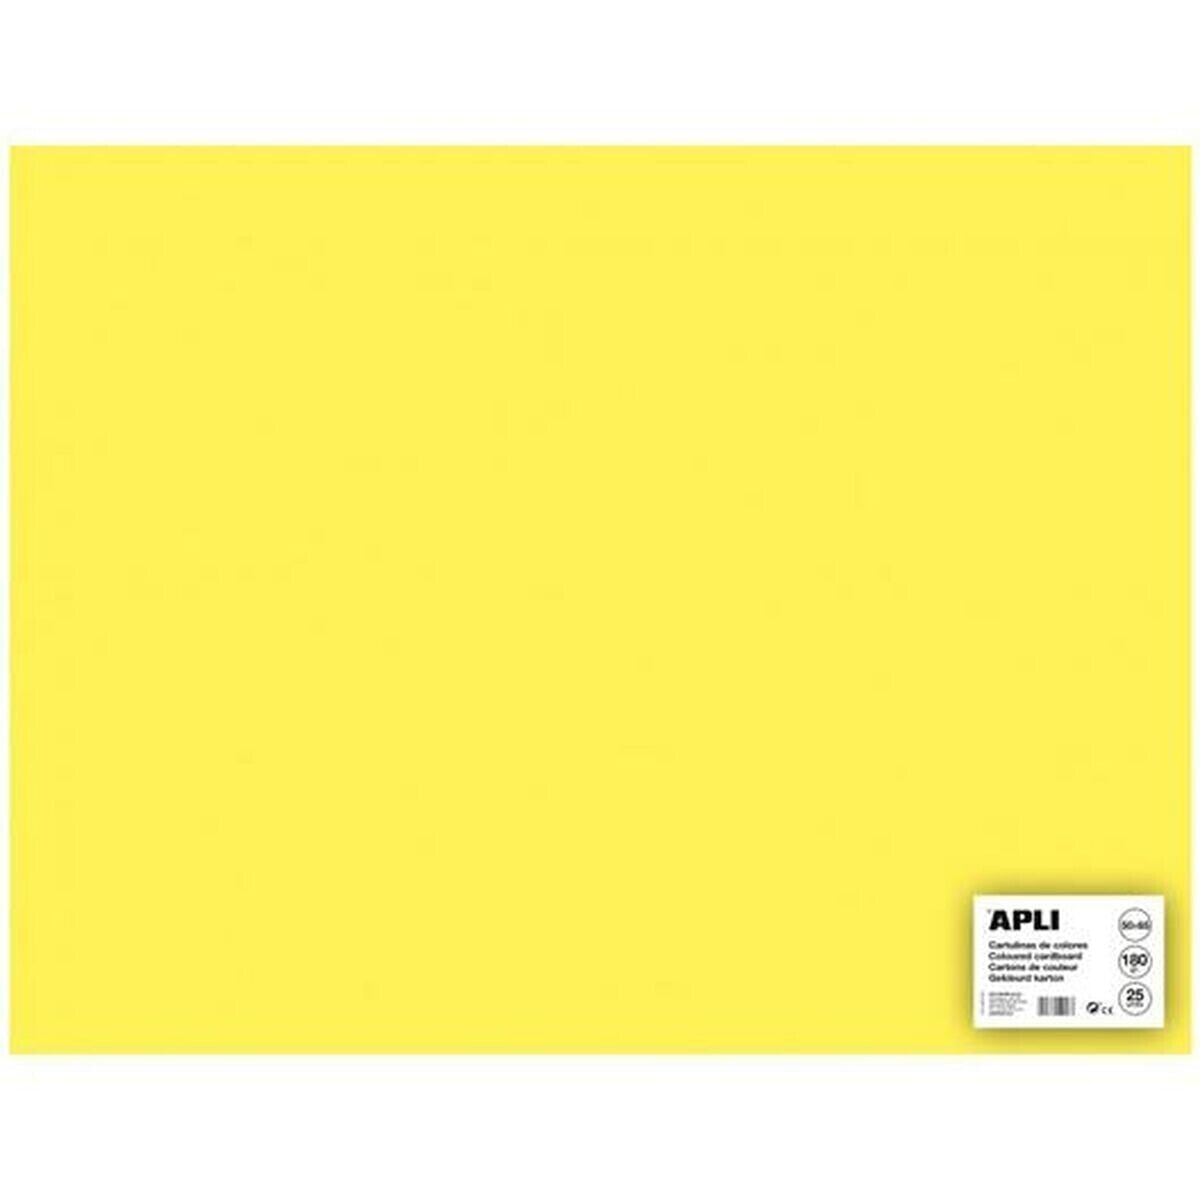 Cards Apli Yellow 50 x 65 cm